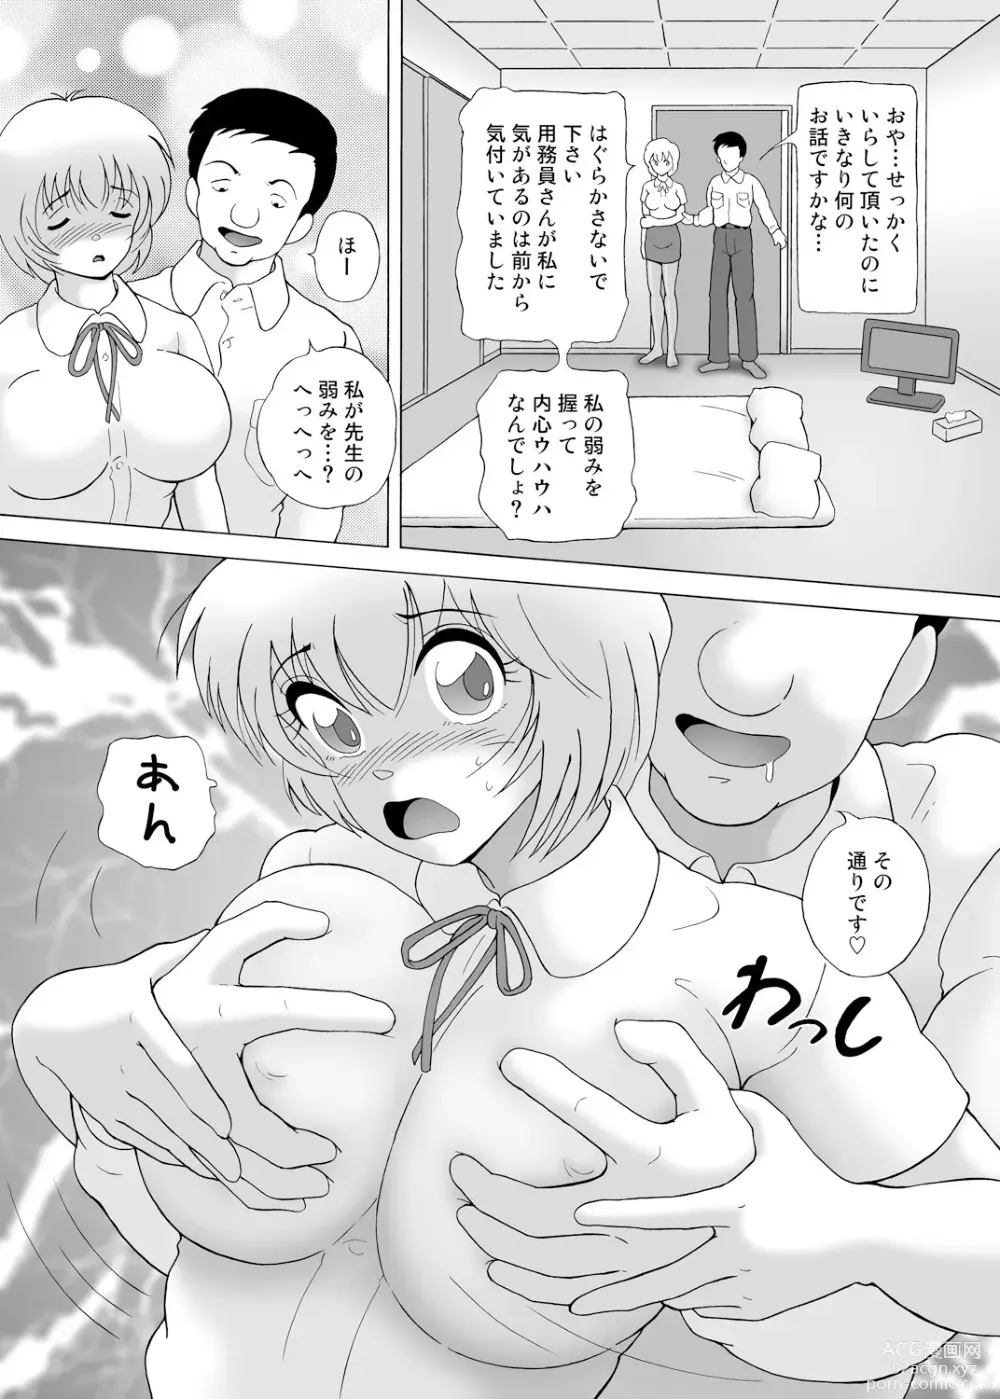 Page 18 of manga Yachin Tainou Bijin Shimai Kyousei Nikutai Harai